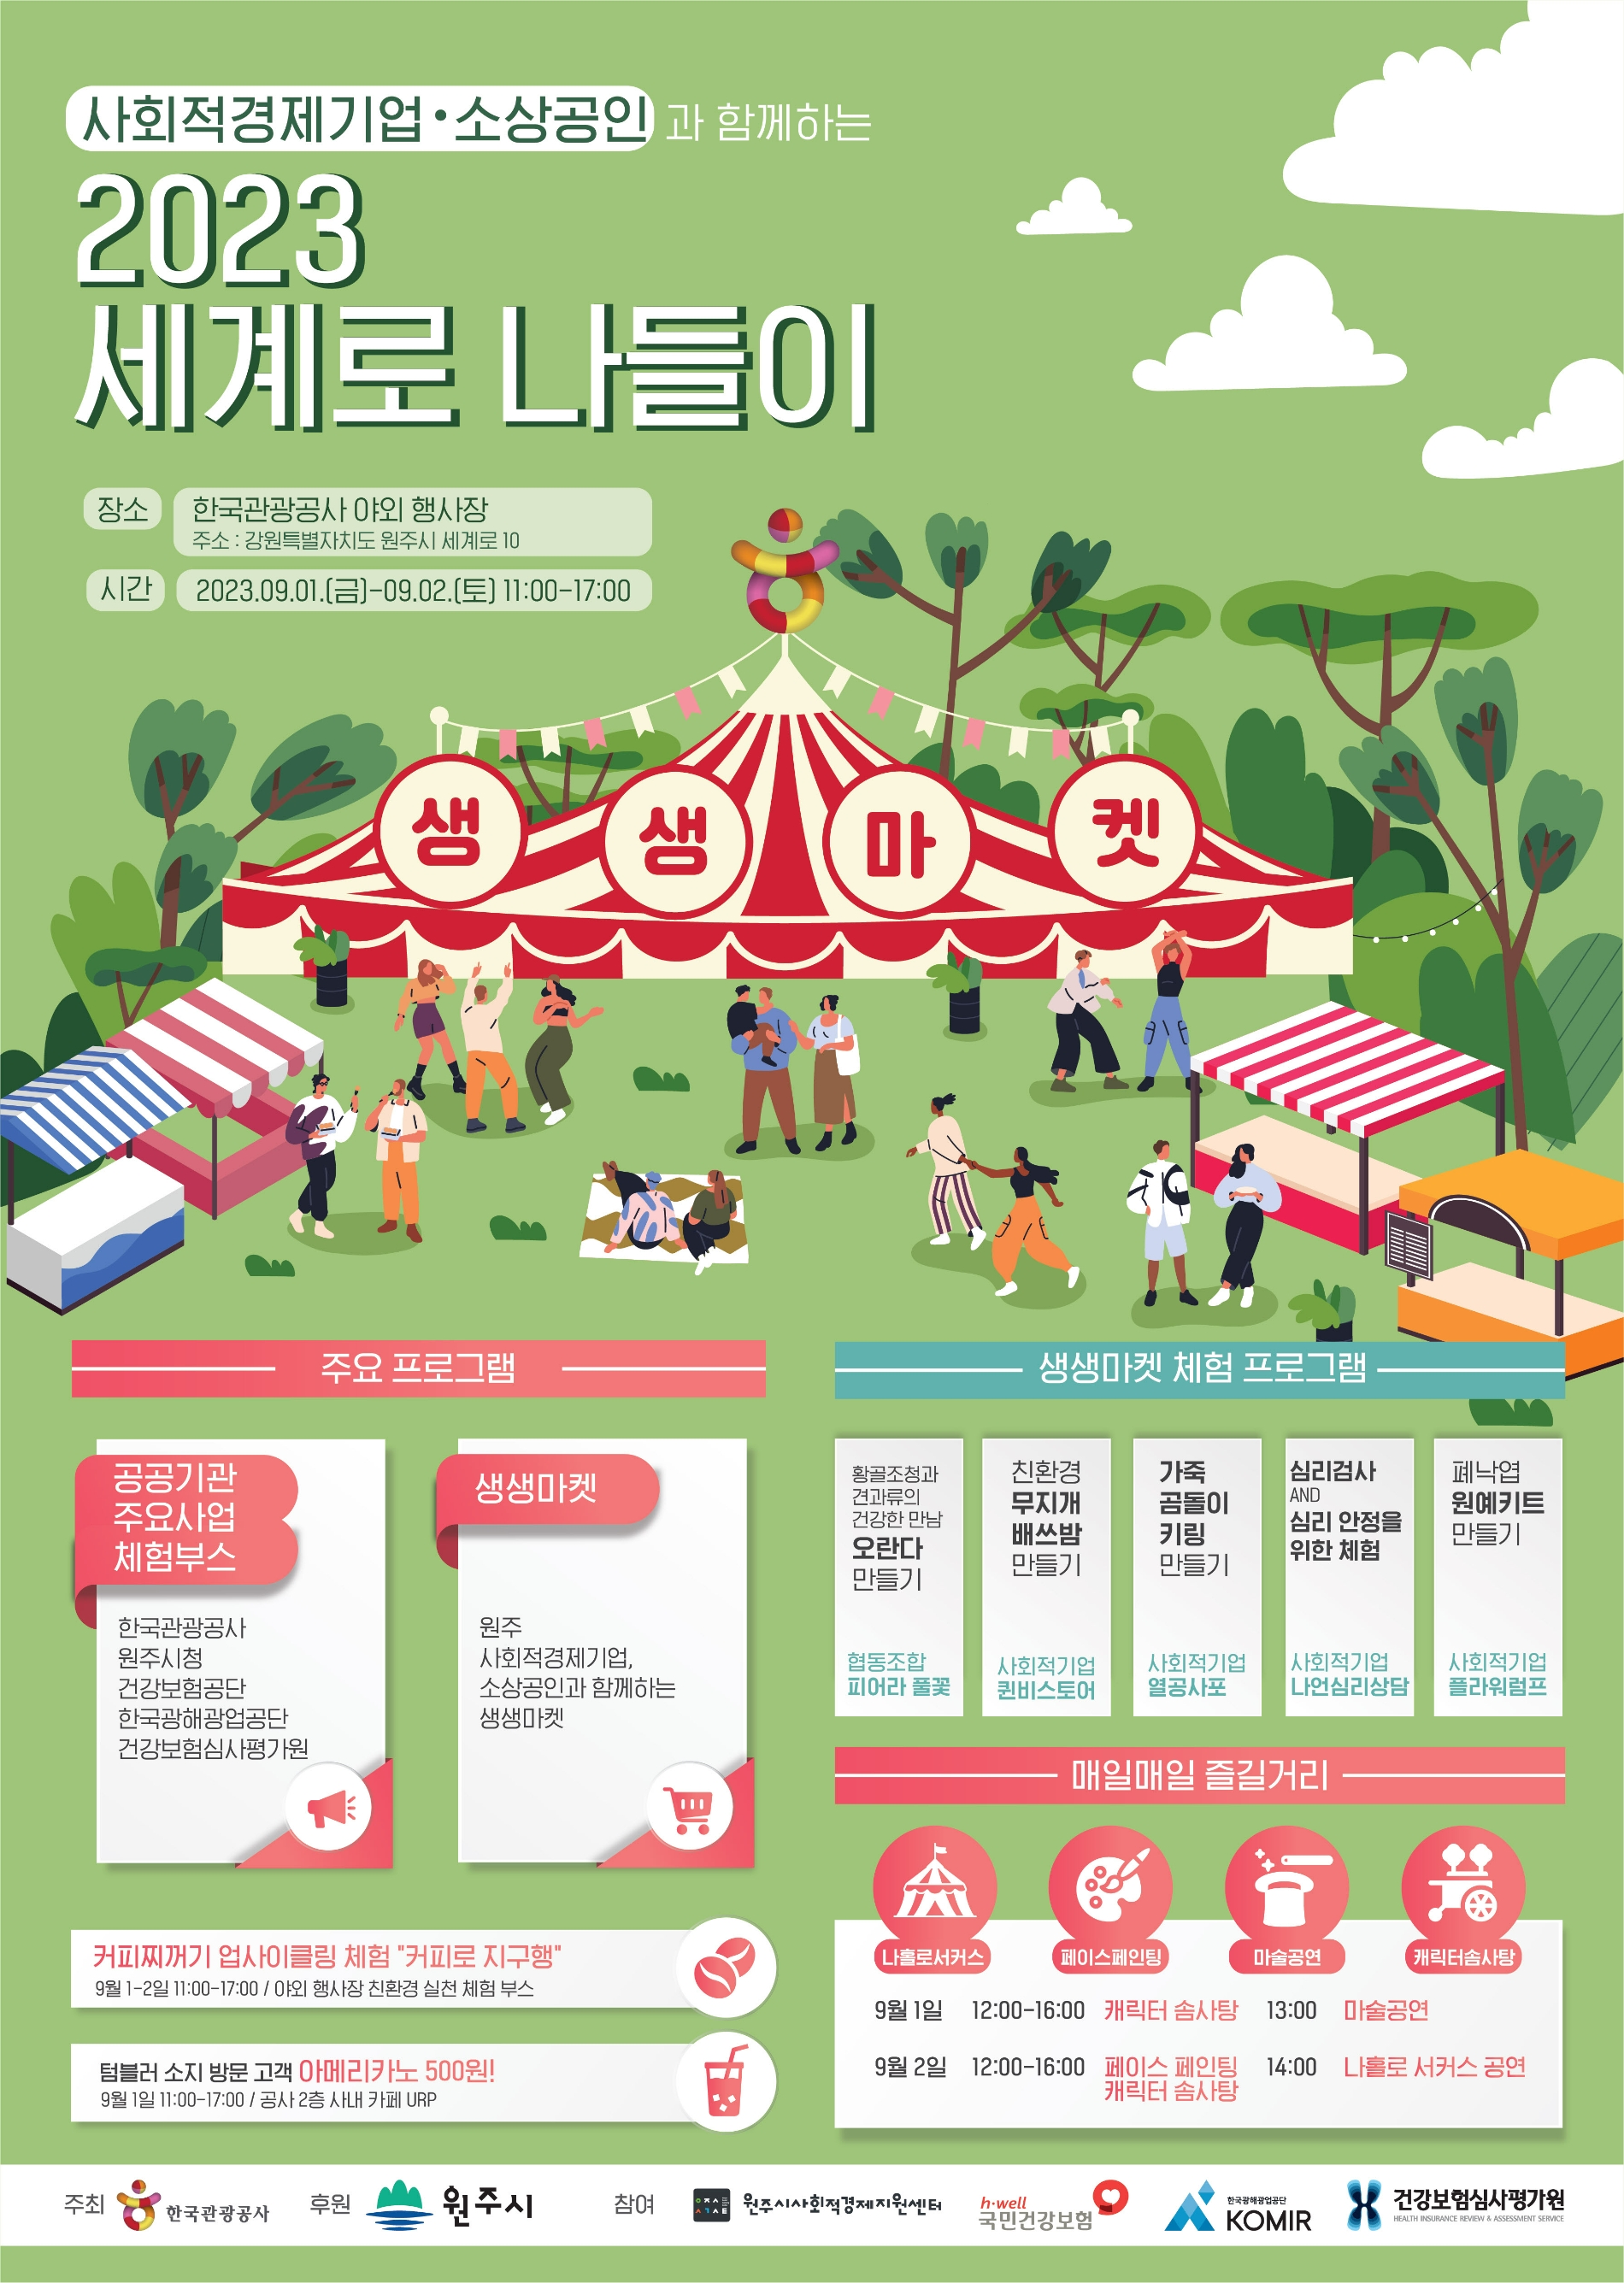 원주 세계로나들이 행사 포스터. /사진제공=한국관광공사